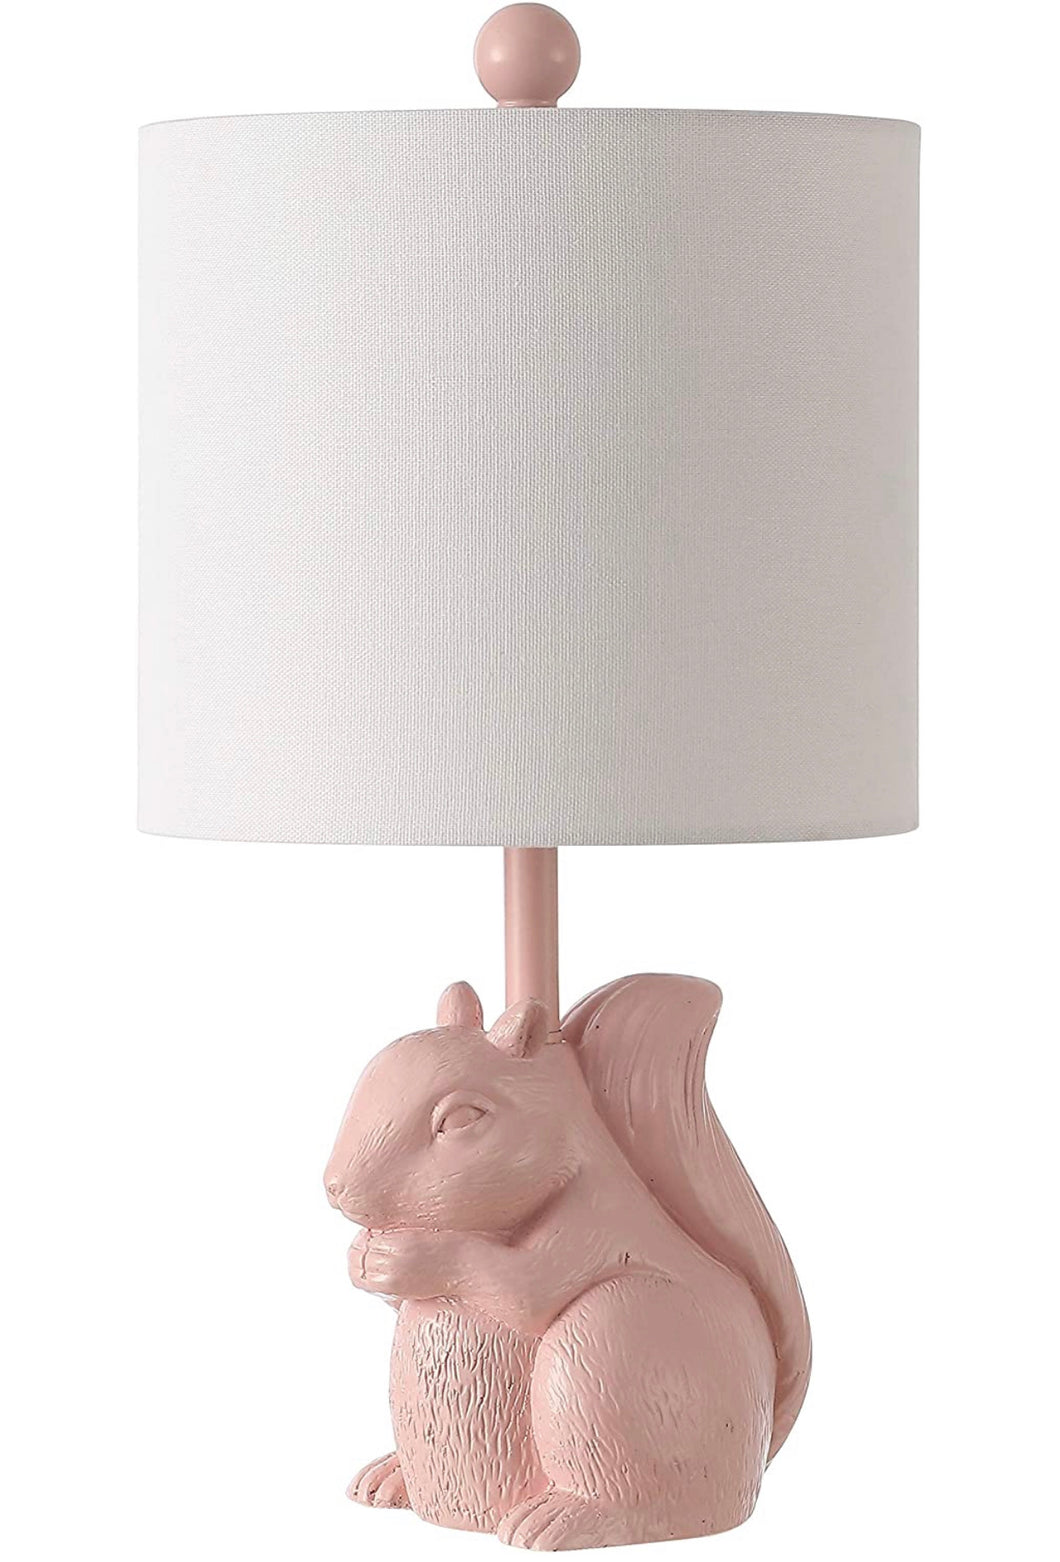 Squirrel Ceramic Table Lamp